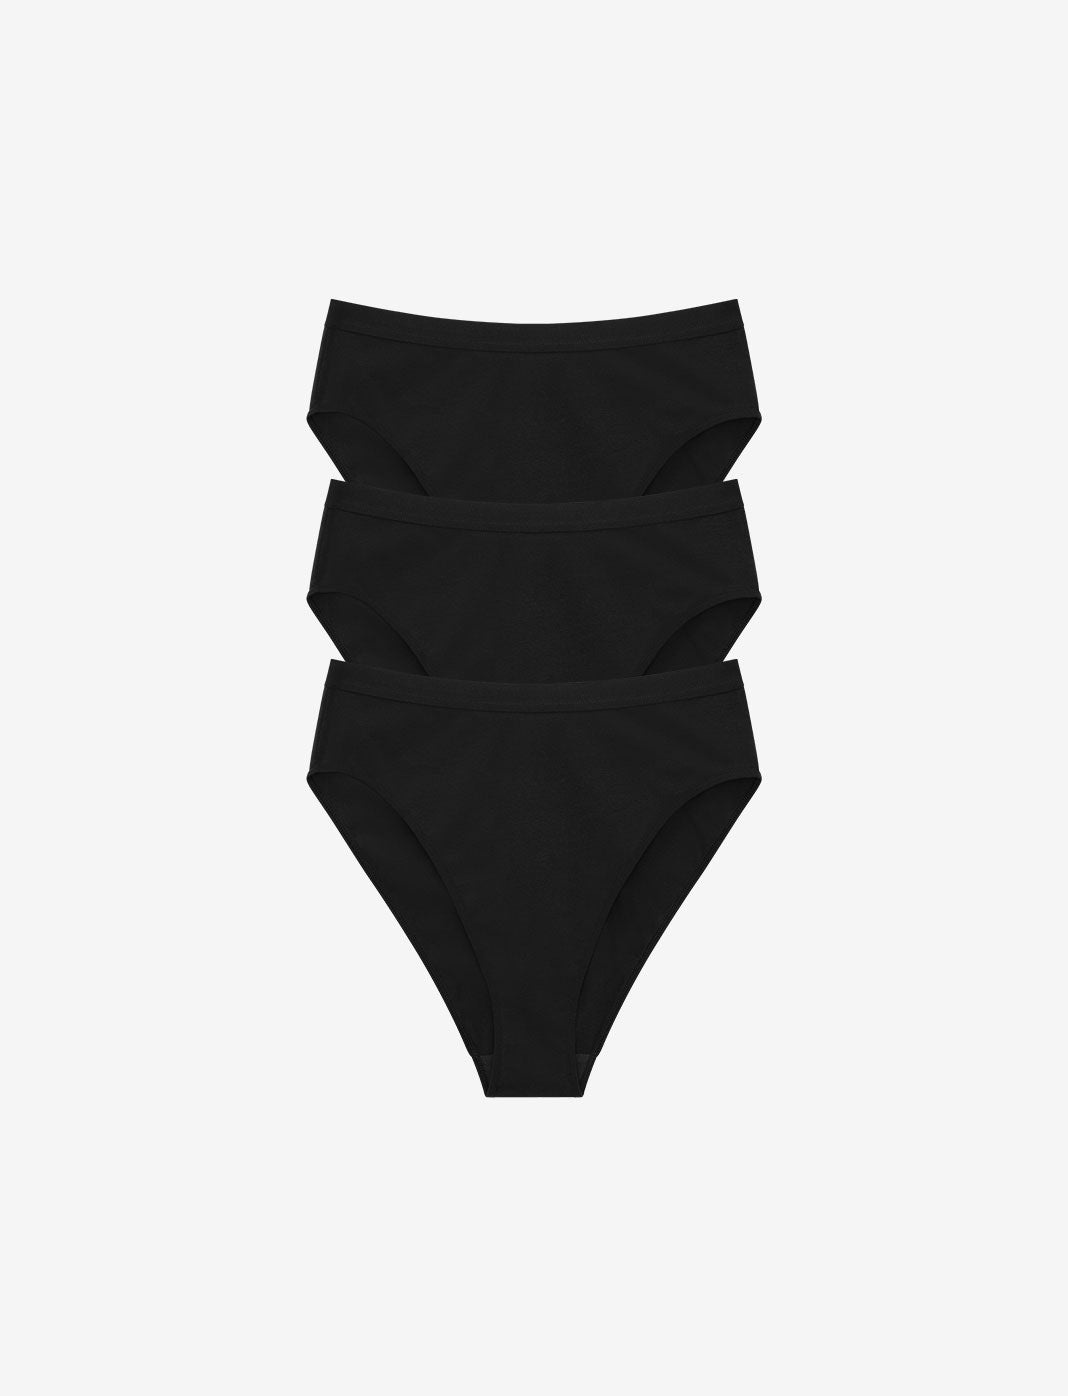 Girls Tradie 2 x 3 Pack Cotton Underwear Bikini Briefs Essence (SB3)